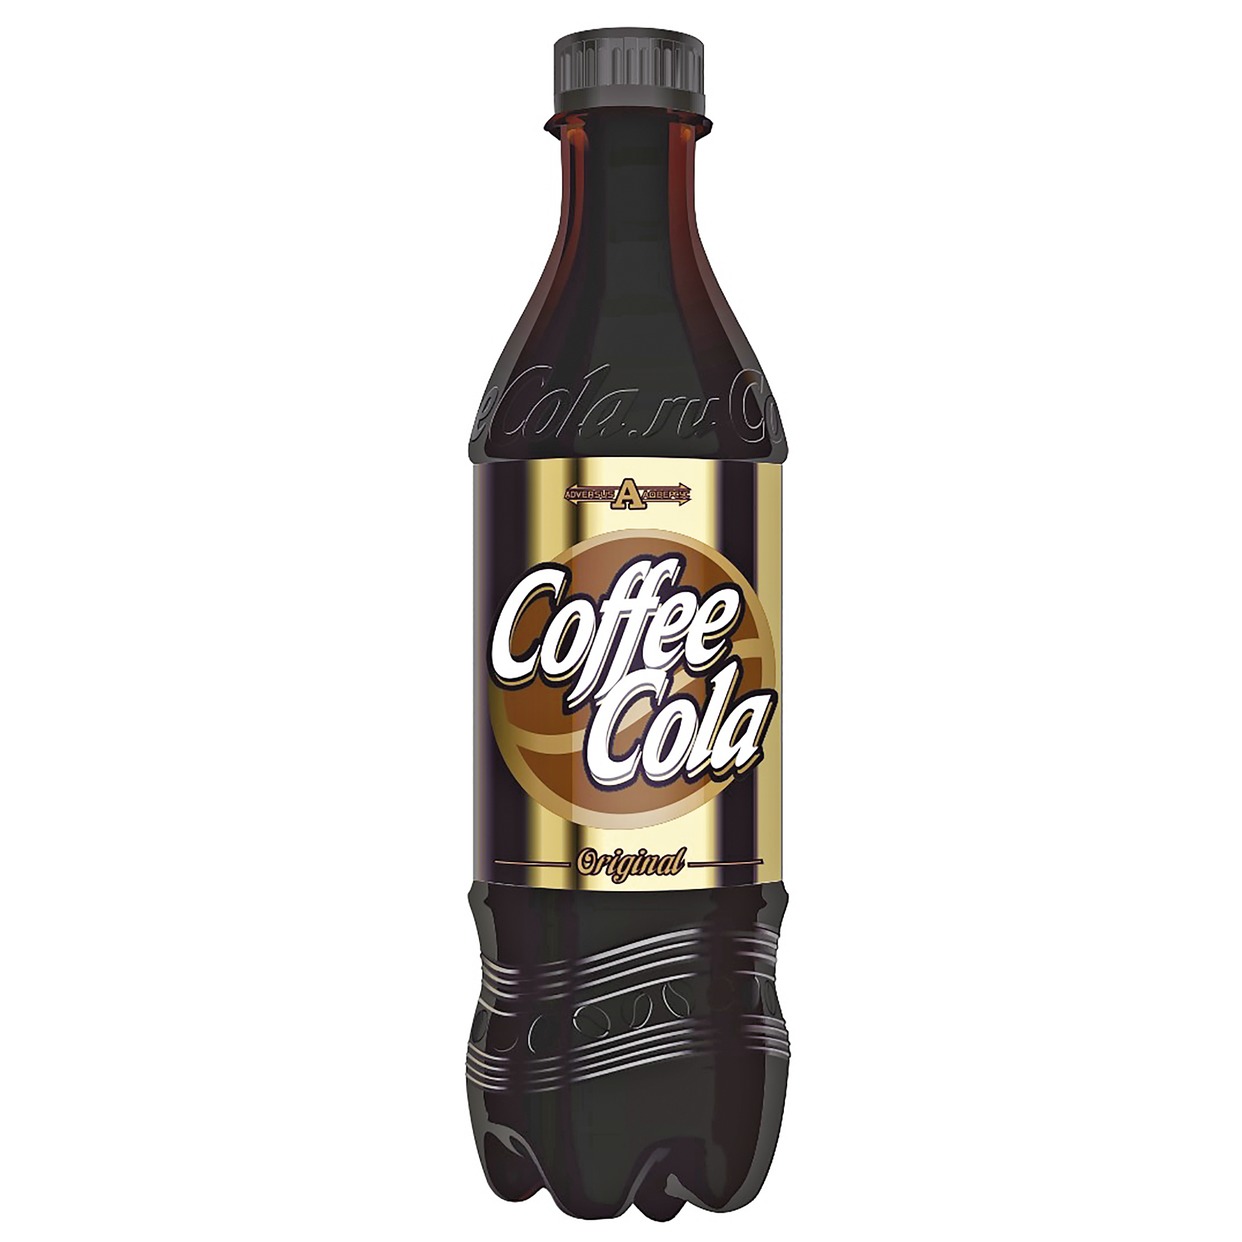 Напиток безалкогольный сильногазированный "Coffee Cola" 0,5л ПЭТ по акции в Пятерочке